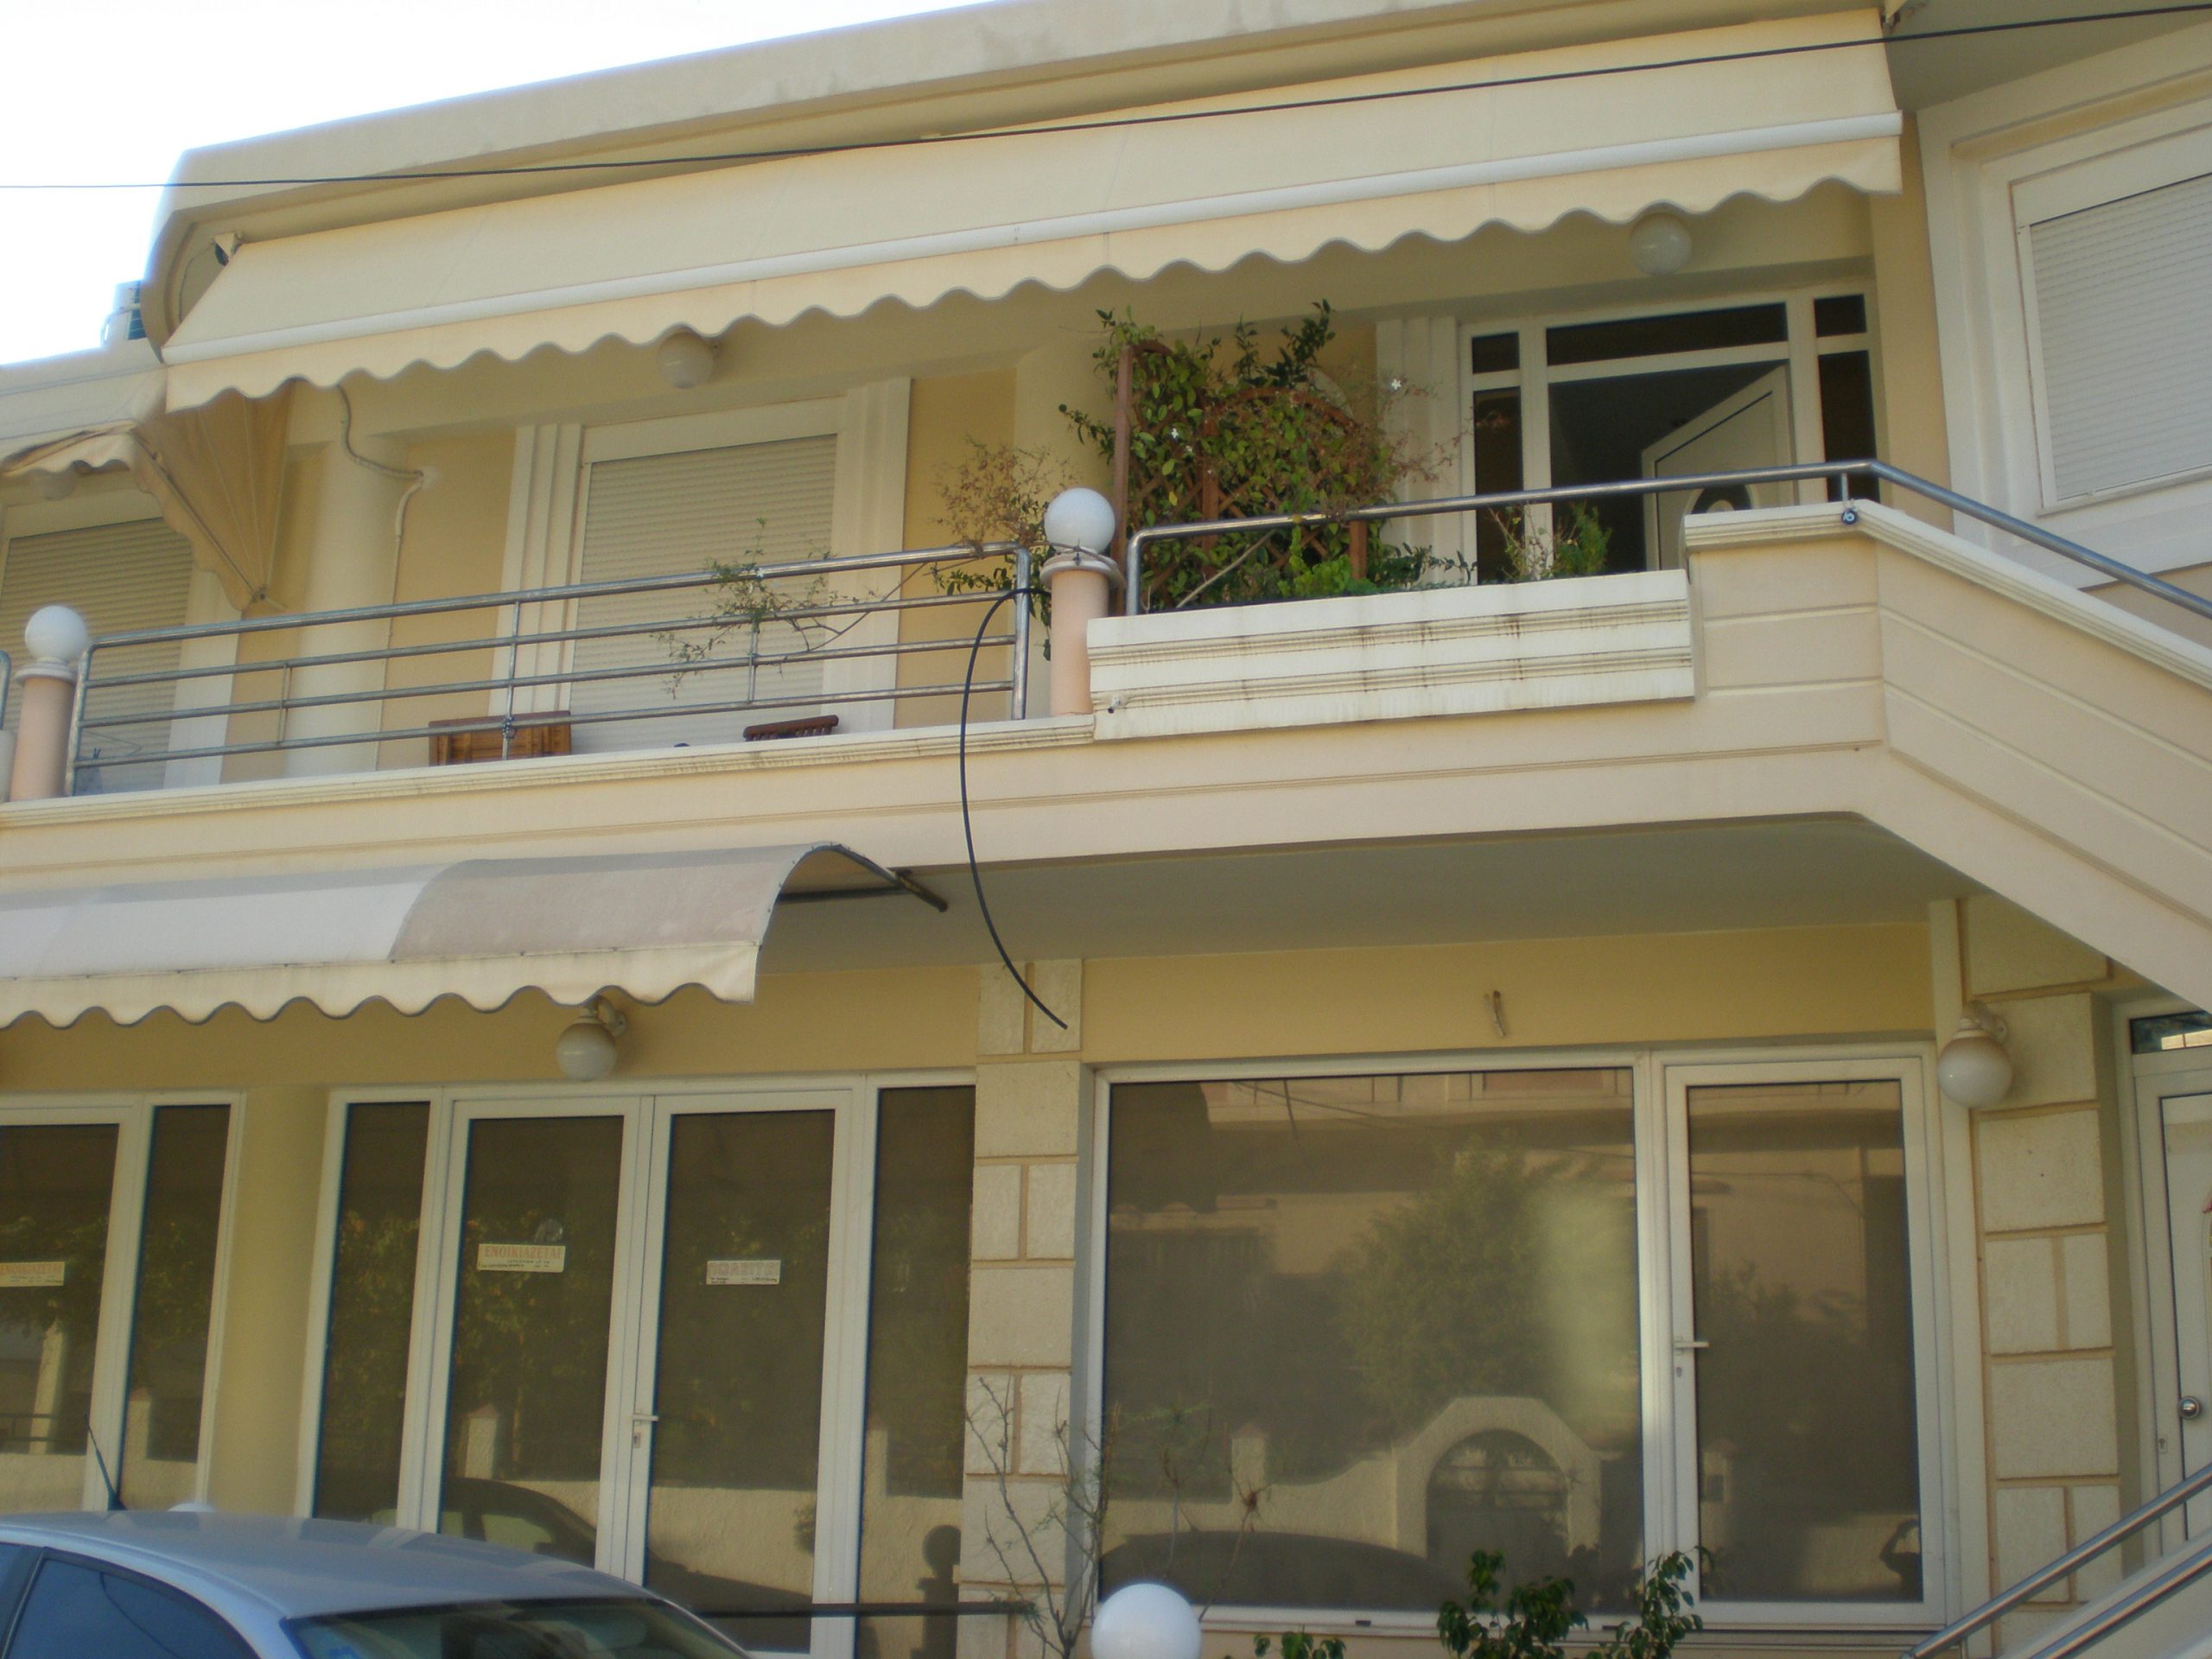 συγκρότημα κατοικιών προς πώληση στα Χανιά - Μεσιτικό γραφείο ΑΤΛΑΣ στα Χανιά Κρήτης